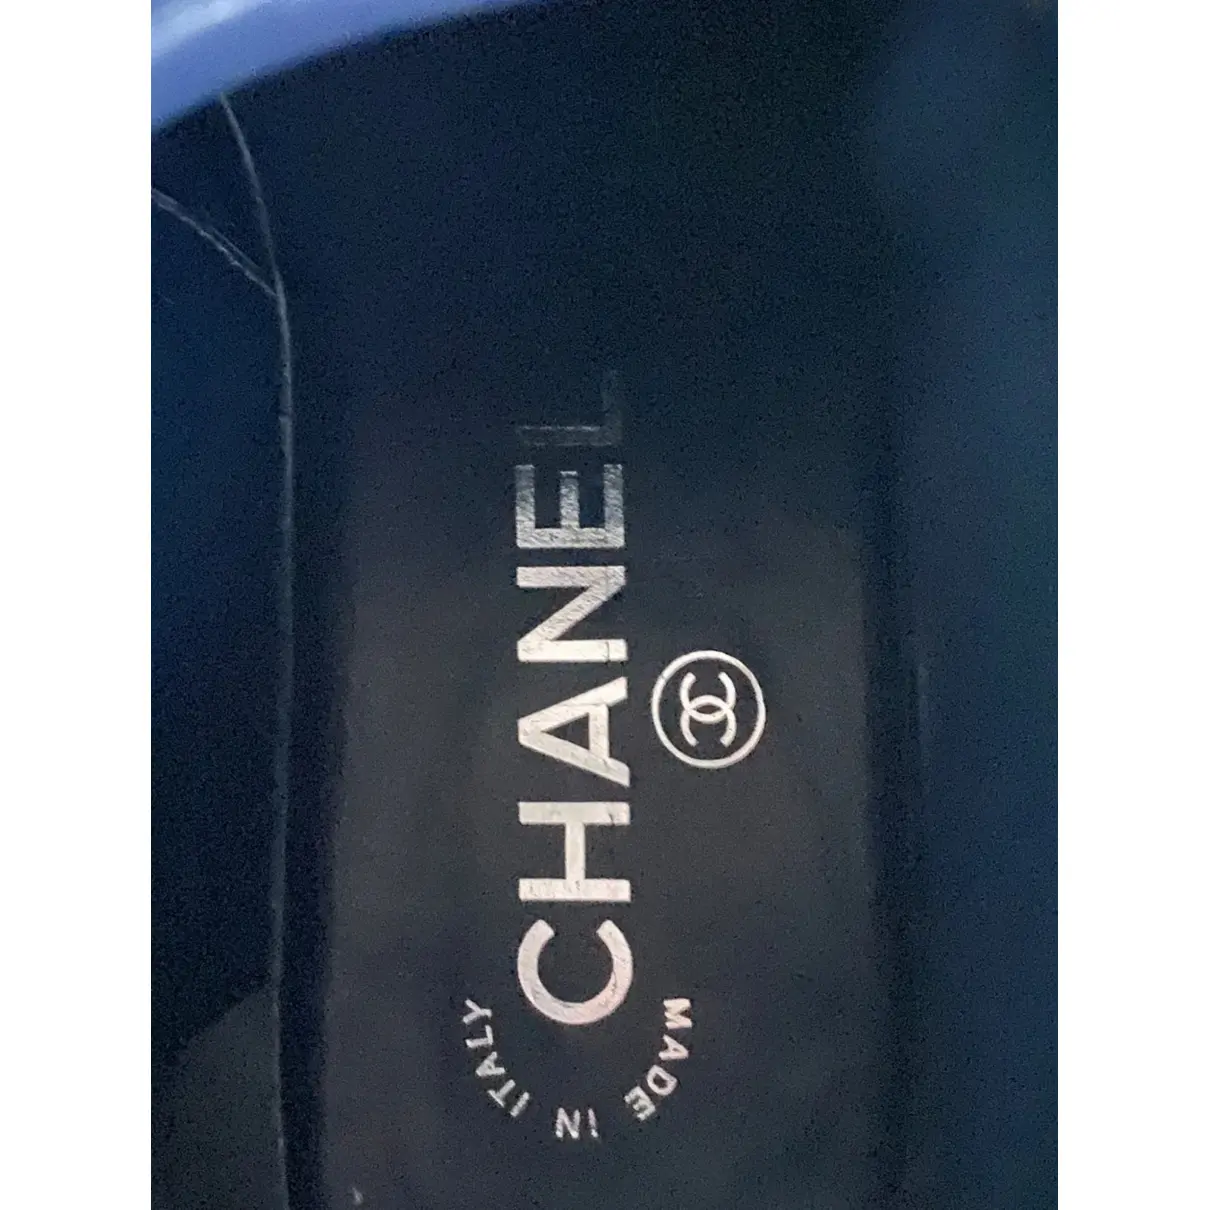 Buy Chanel Velvet ankle boots online